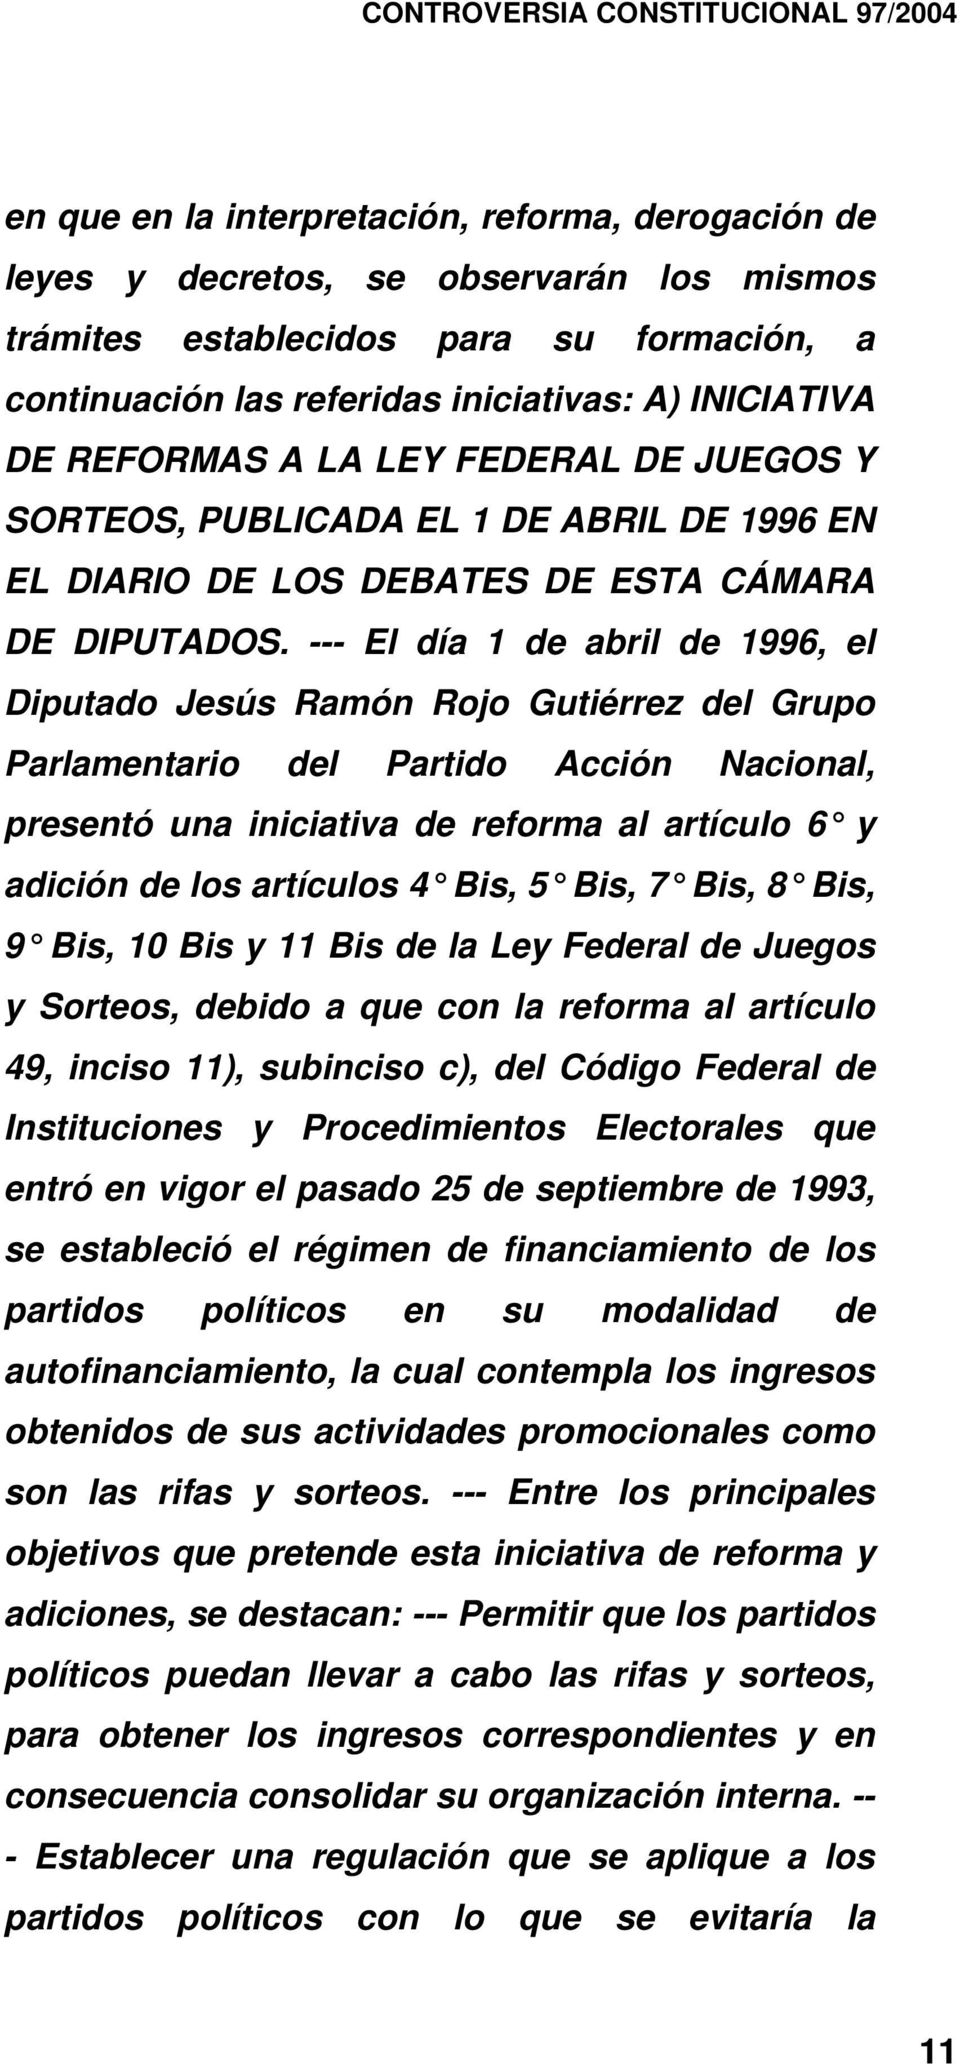 --- El día 1 de abril de 1996, el Diputado Jesús Ramón Rojo Gutiérrez del Grupo Parlamentario del Partido Acción Nacional, presentó una iniciativa de reforma al artículo 6 y adición de los artículos